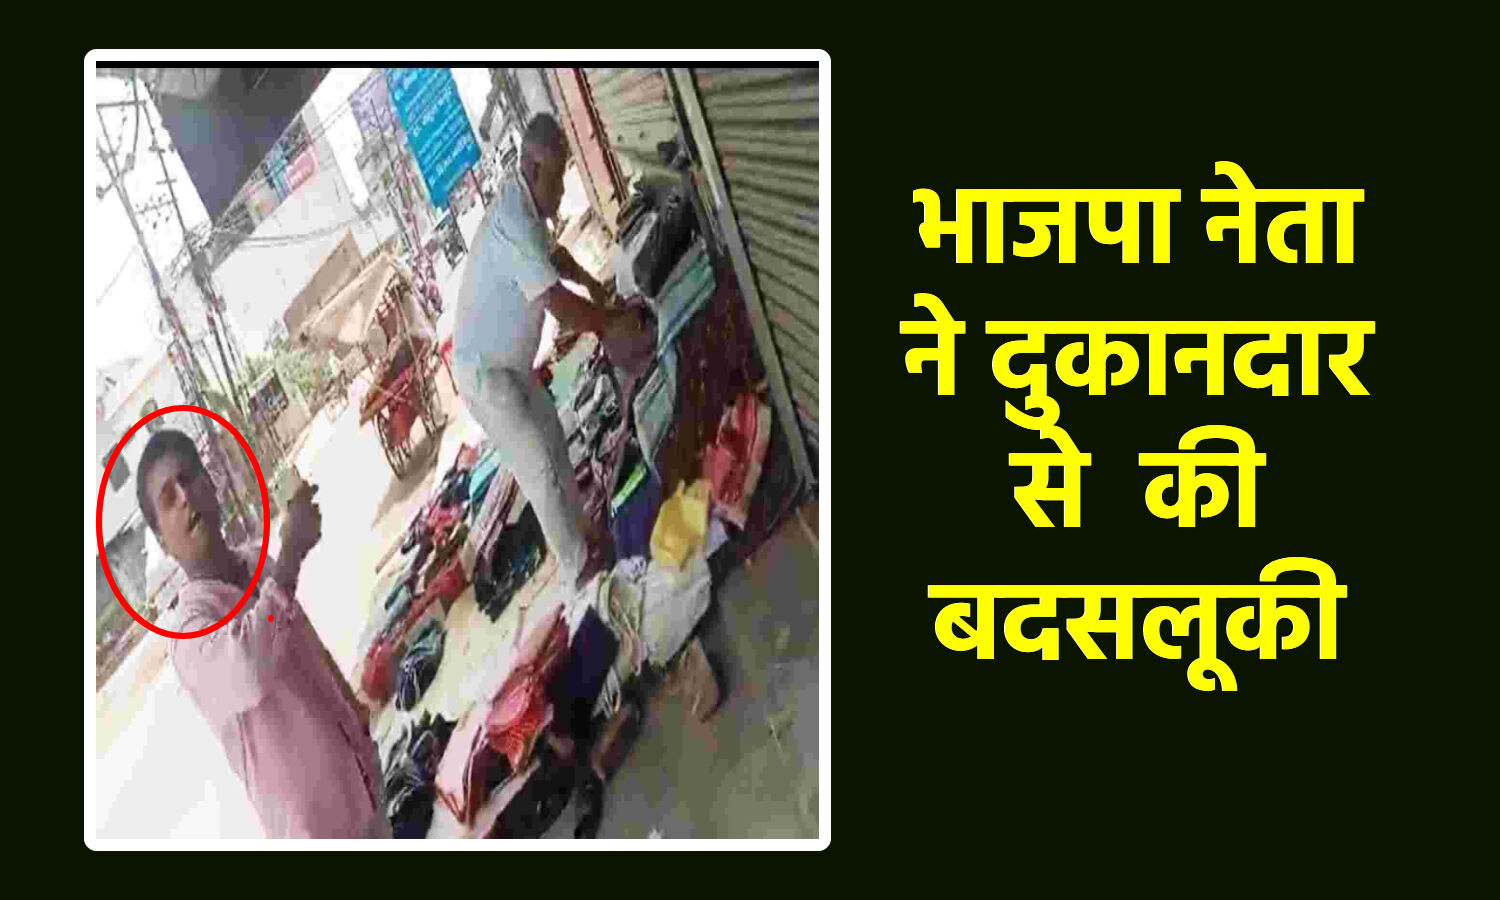 Kanpur News : BJP नेता ने मुस्लिम बुजुर्ग से की बदसलूकी, जबरन रास्ते से हटवाई दुकान, देखिए वायरल वीडियो